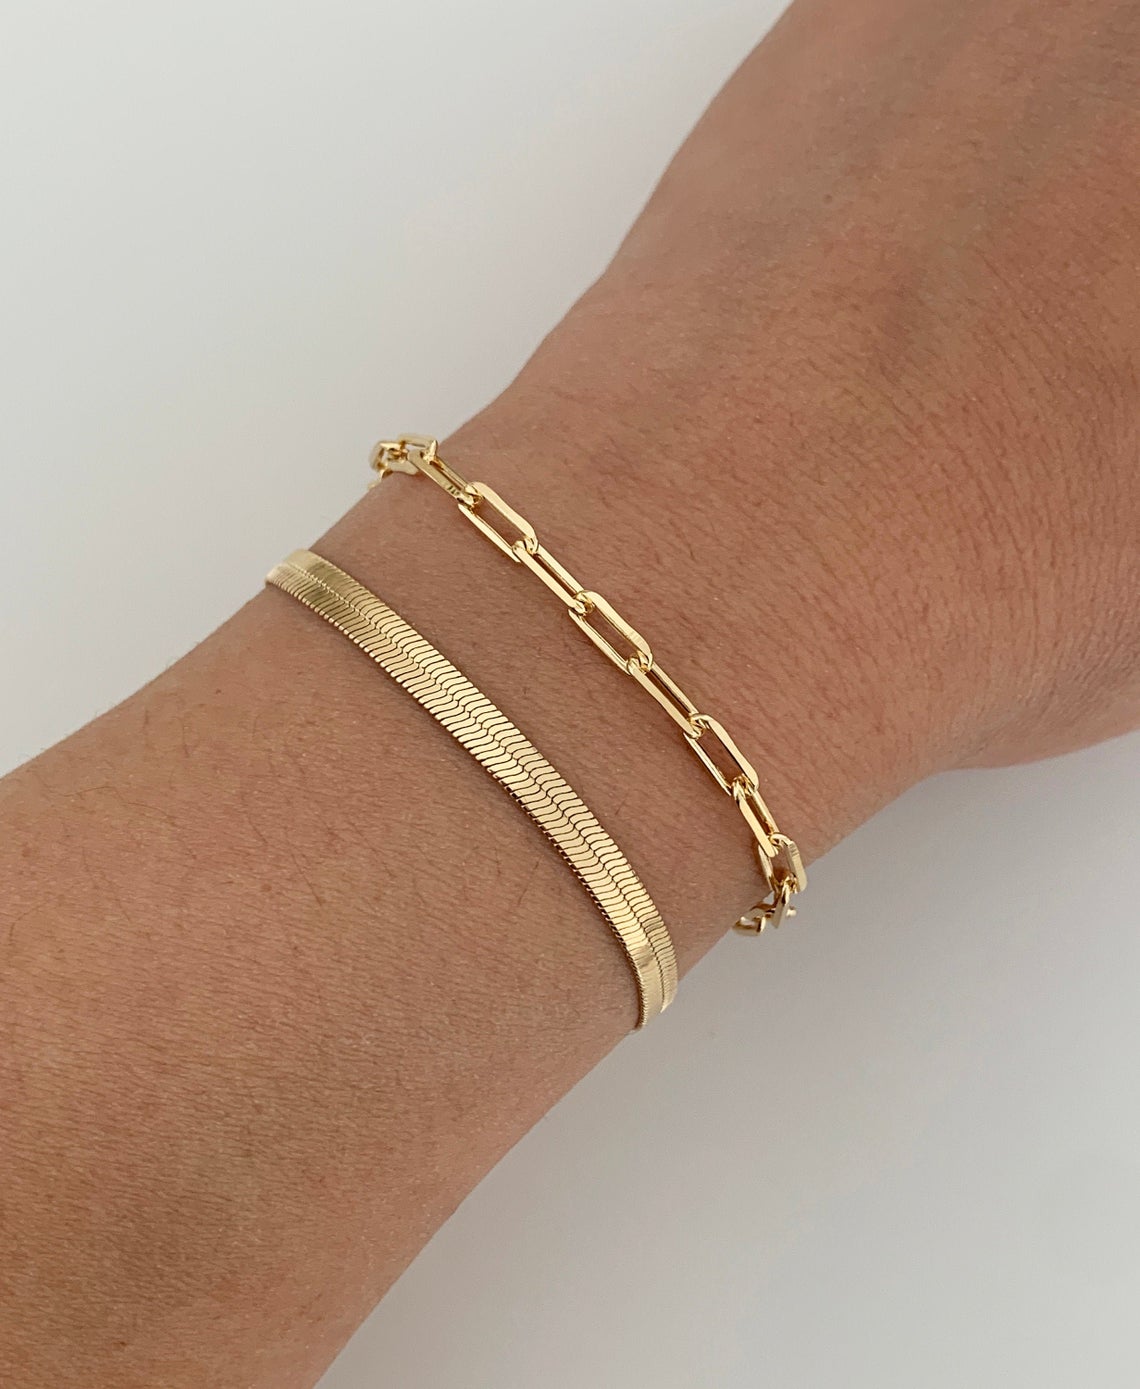 Tasiso Gold Plated Snake Chain Link Bracelet for Women